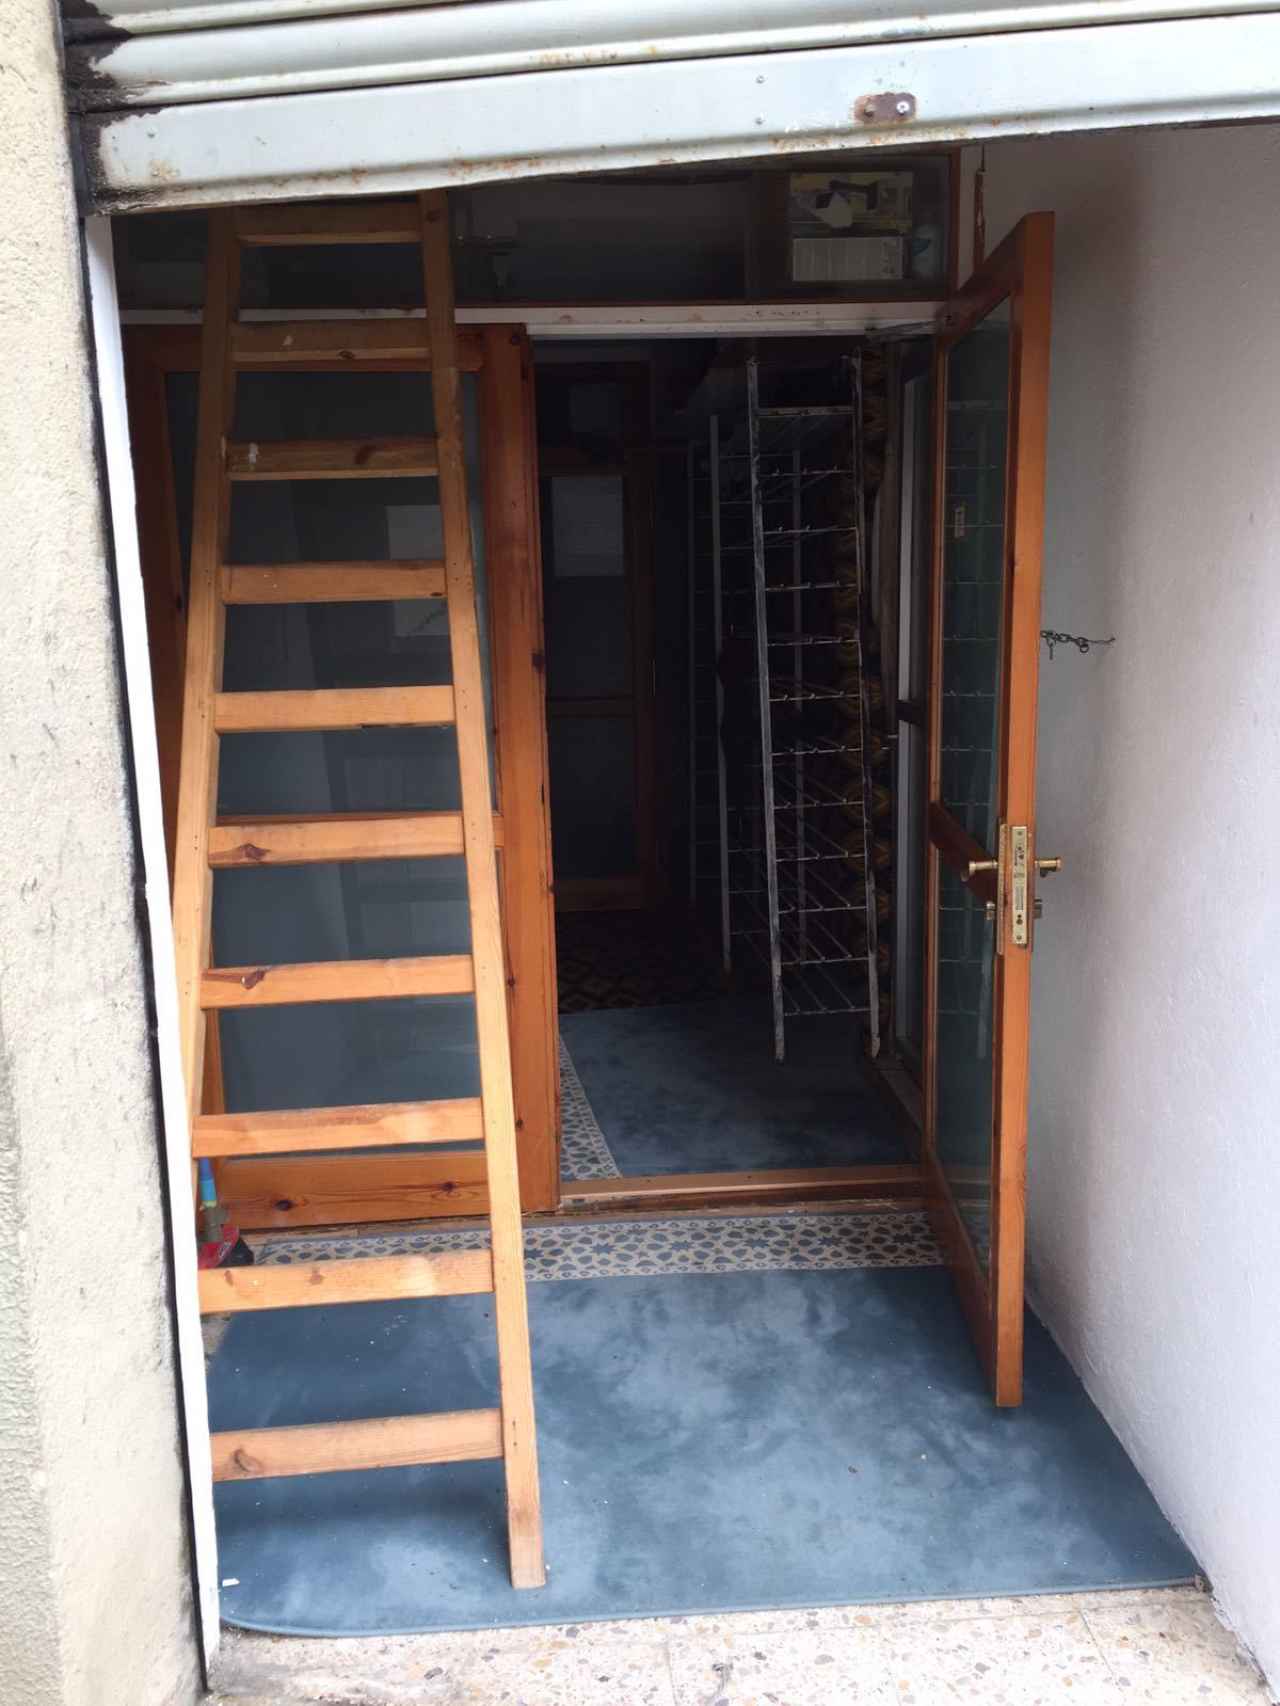 En el recibidor hay un mueble para dejar los zapatos y una escalera que sube a casa del imán